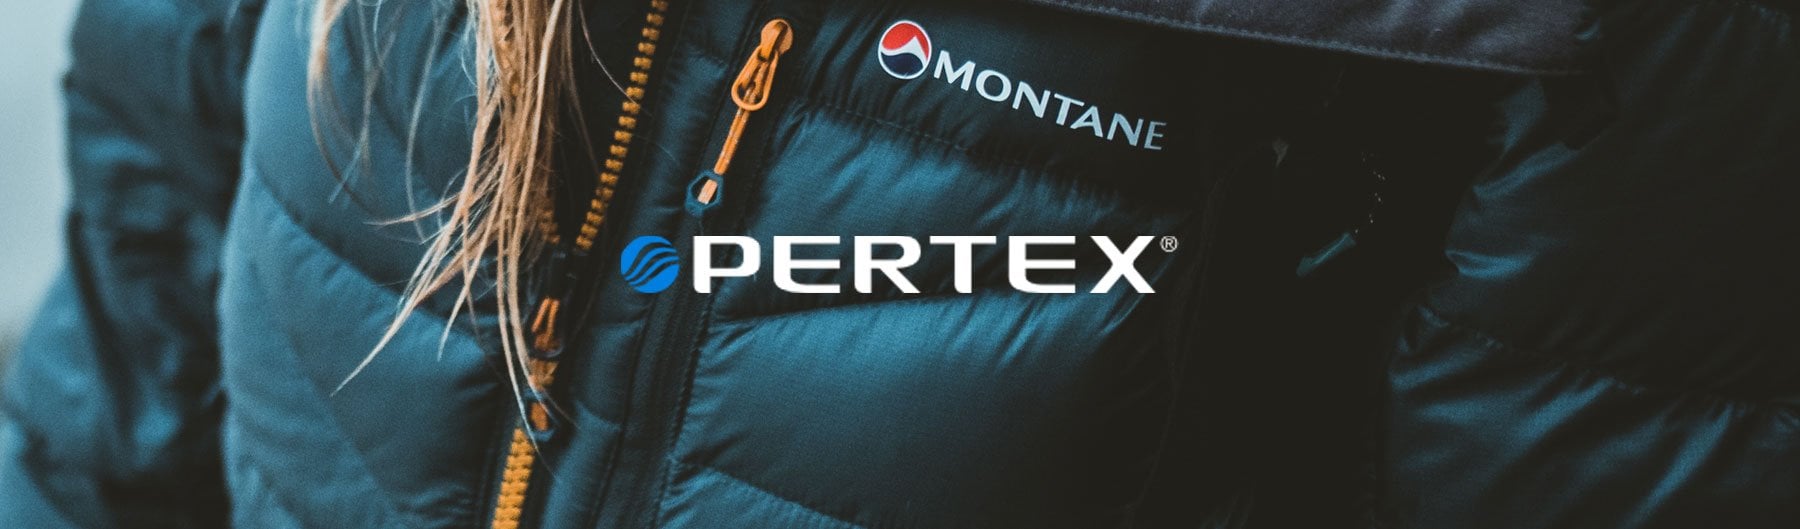 Компанія Montane використовує в пошитті своєї продукції тканини Pertex